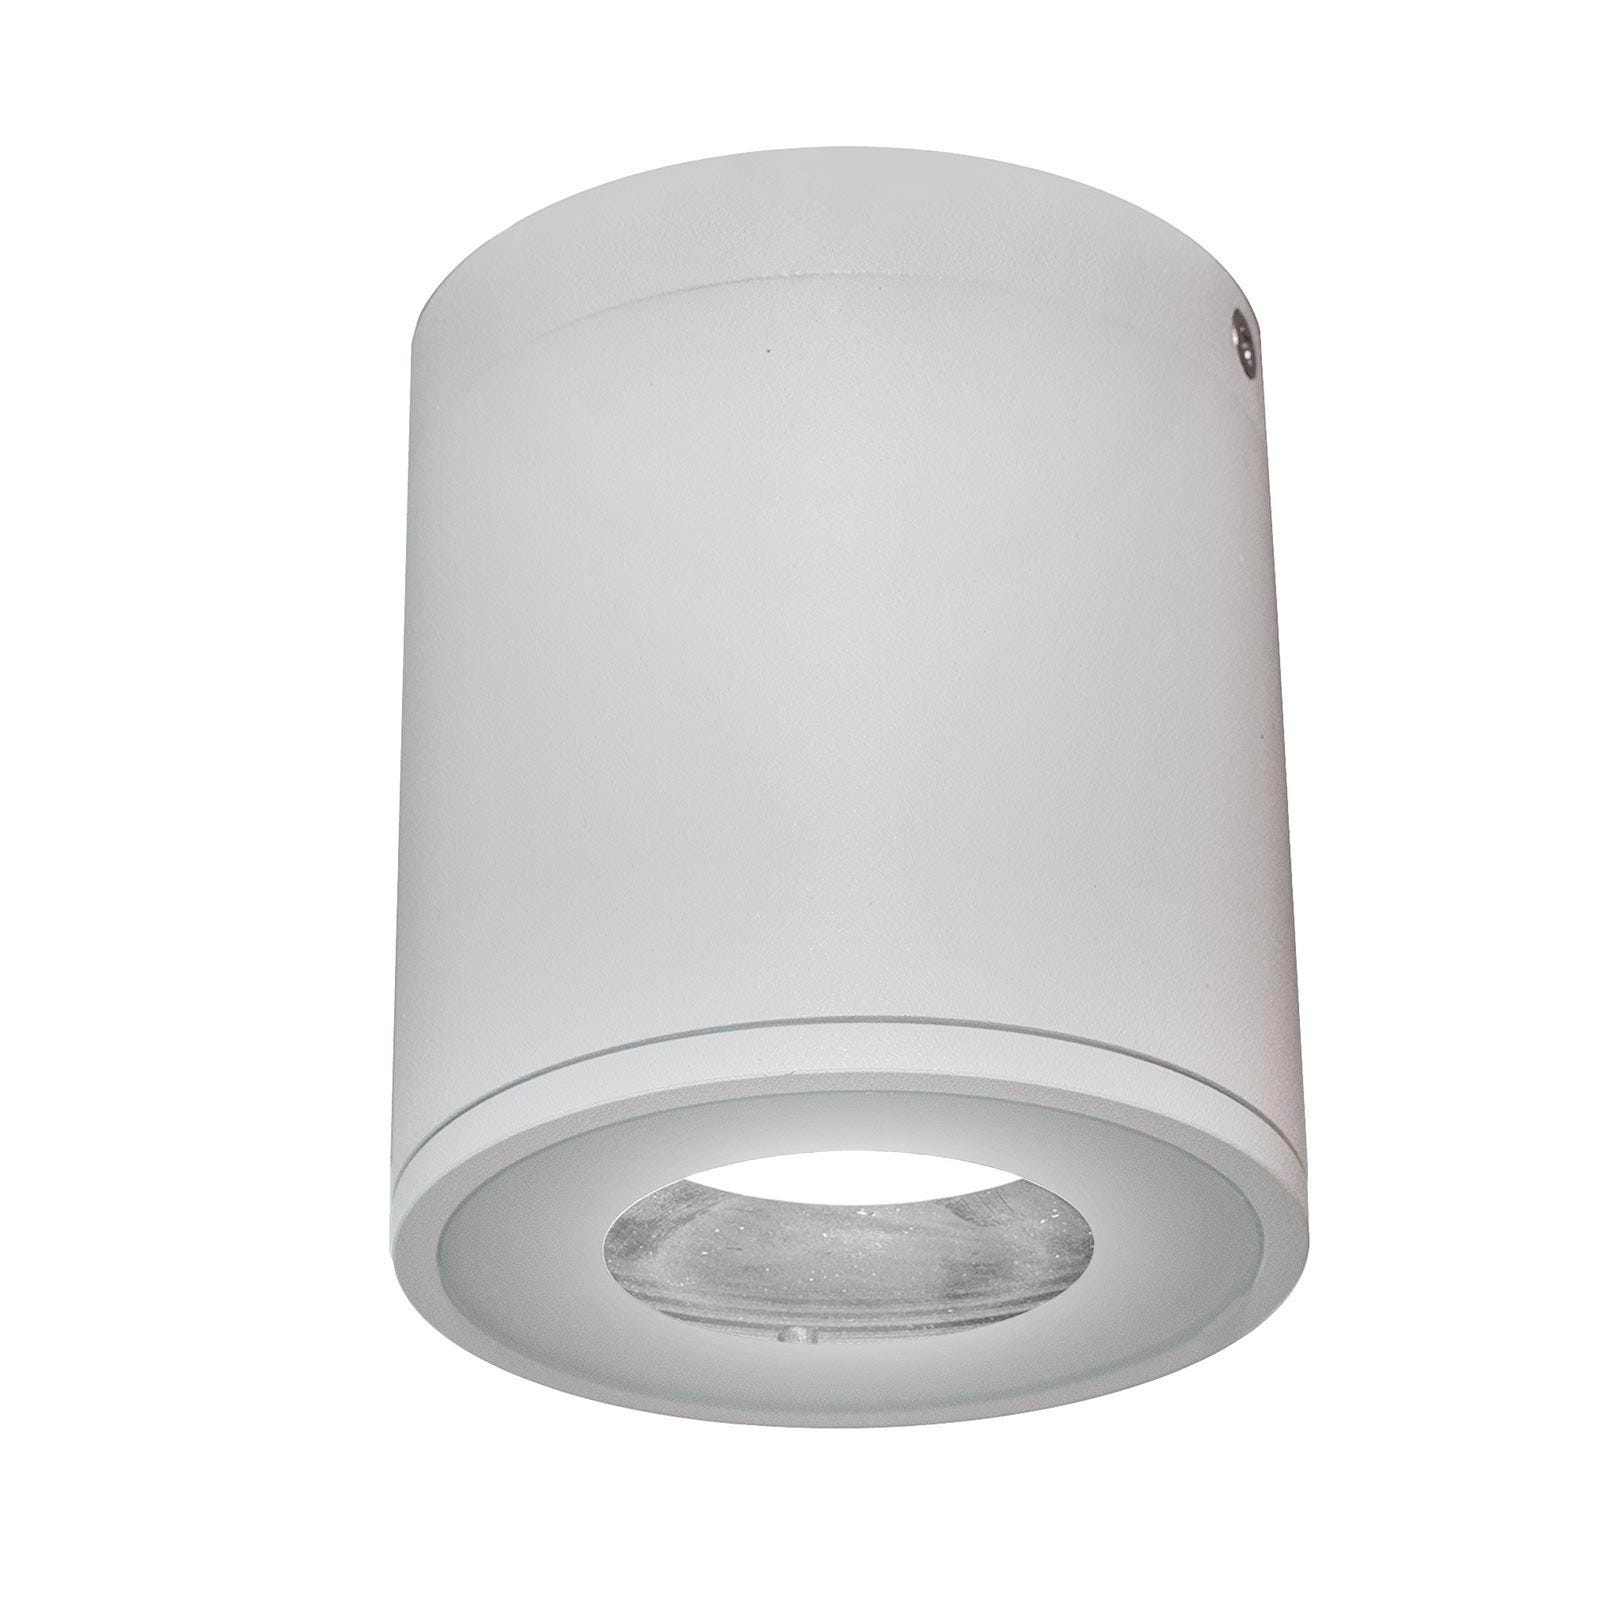 Plafonnier ROND LED plafonnier GU10 lumière cabine de douche étanche IP65  lampe Alexa Google 230V BLANC SANS LAMPE